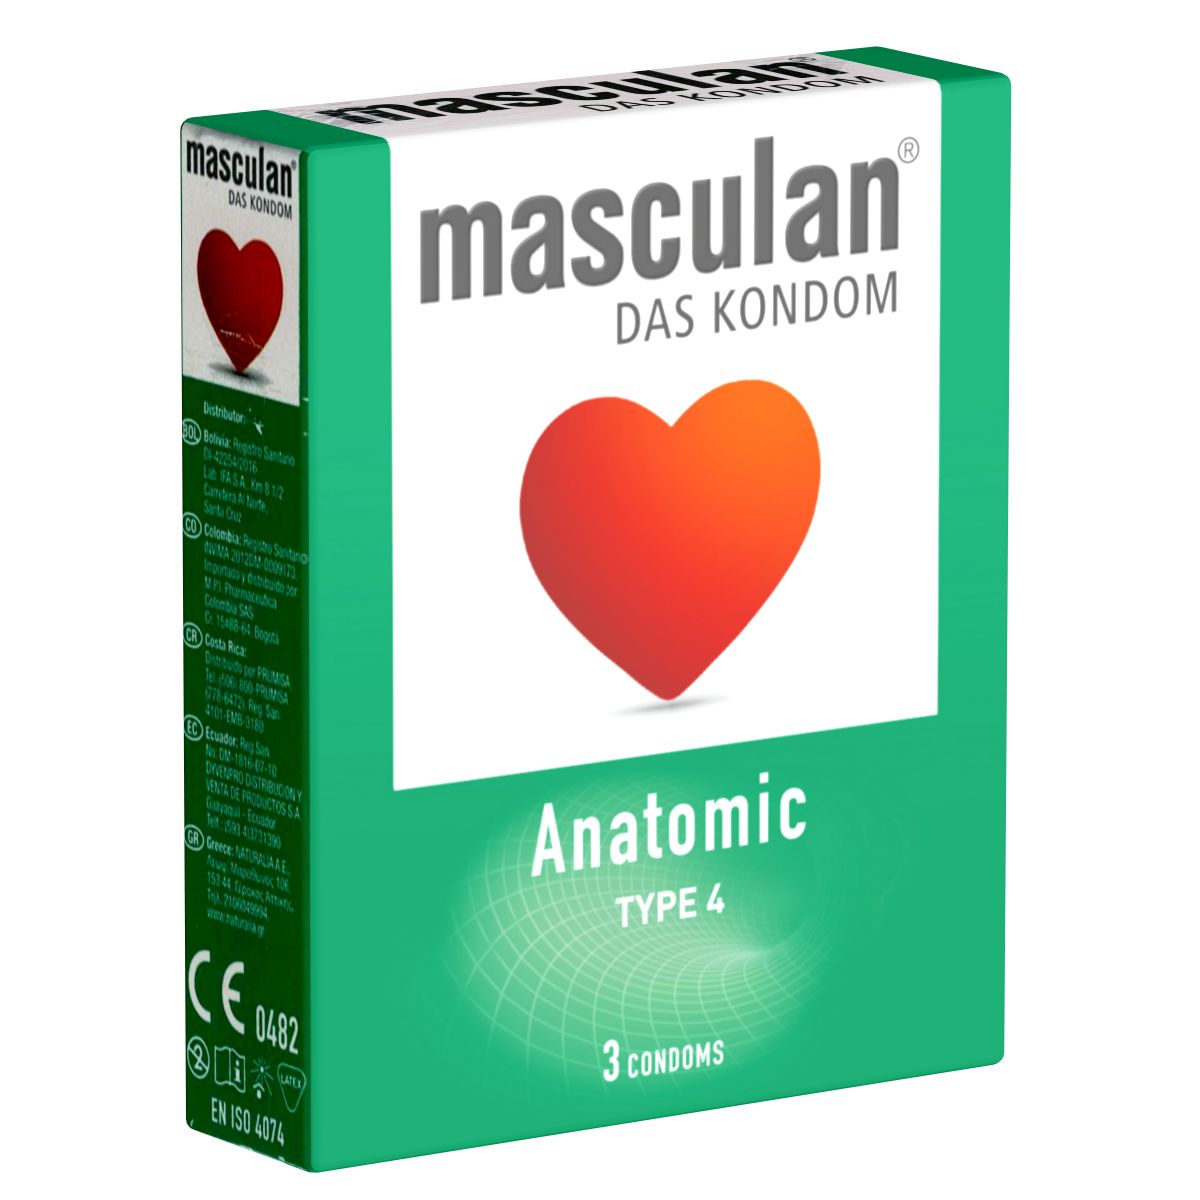 Masculan *Typ 4* (anatomic) anatomische Kondome mit enger Kranzfurche